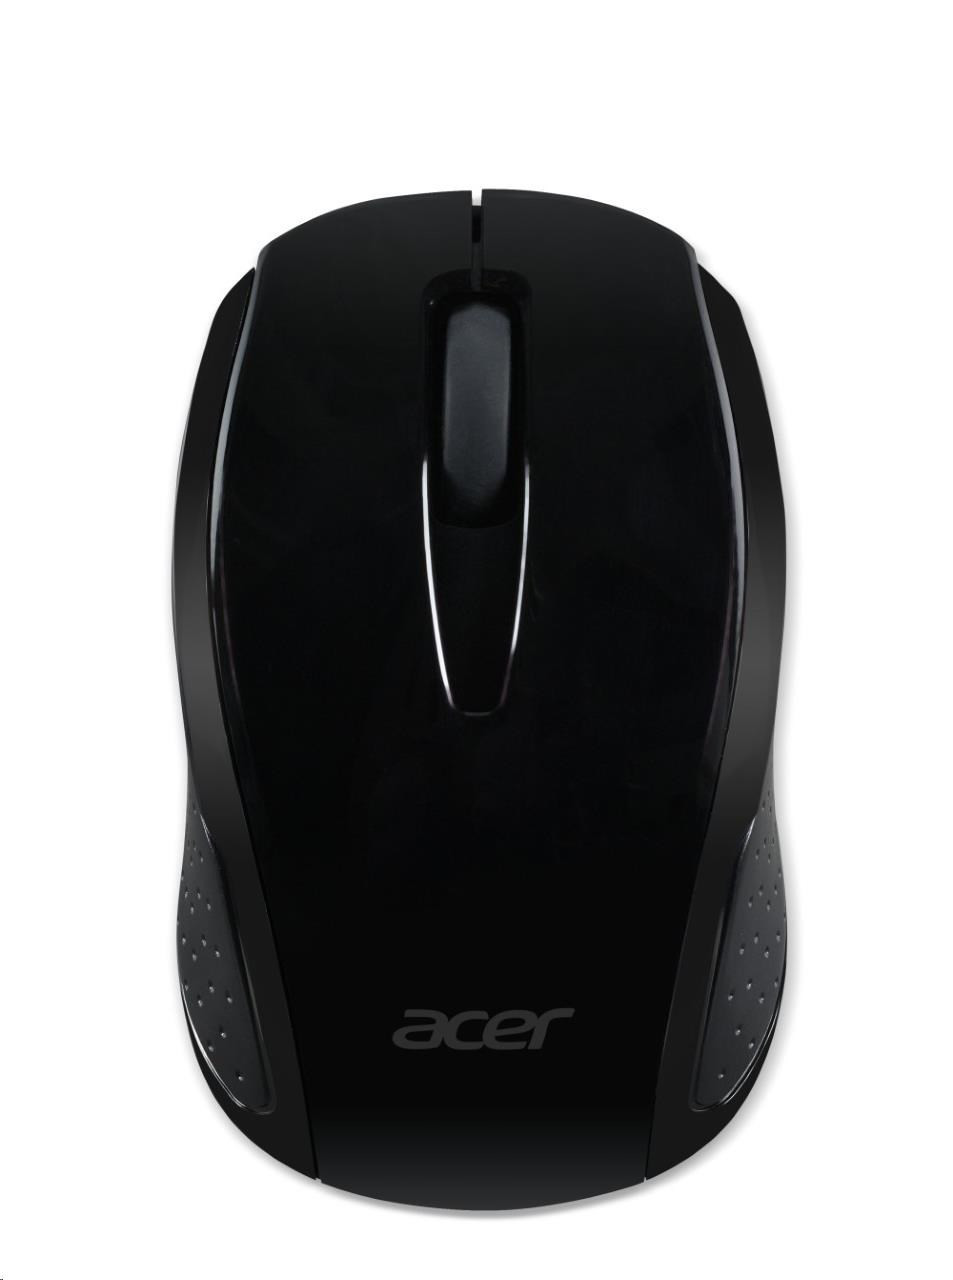 ACER vezeték nélküli egér G69 fekete - RF2.4G, 1600 dpi, 95x58x35 mm, 10 m hatótáv, 2x AAA, Win / Chrome / Mac, (kiskereskedelmi csomag)